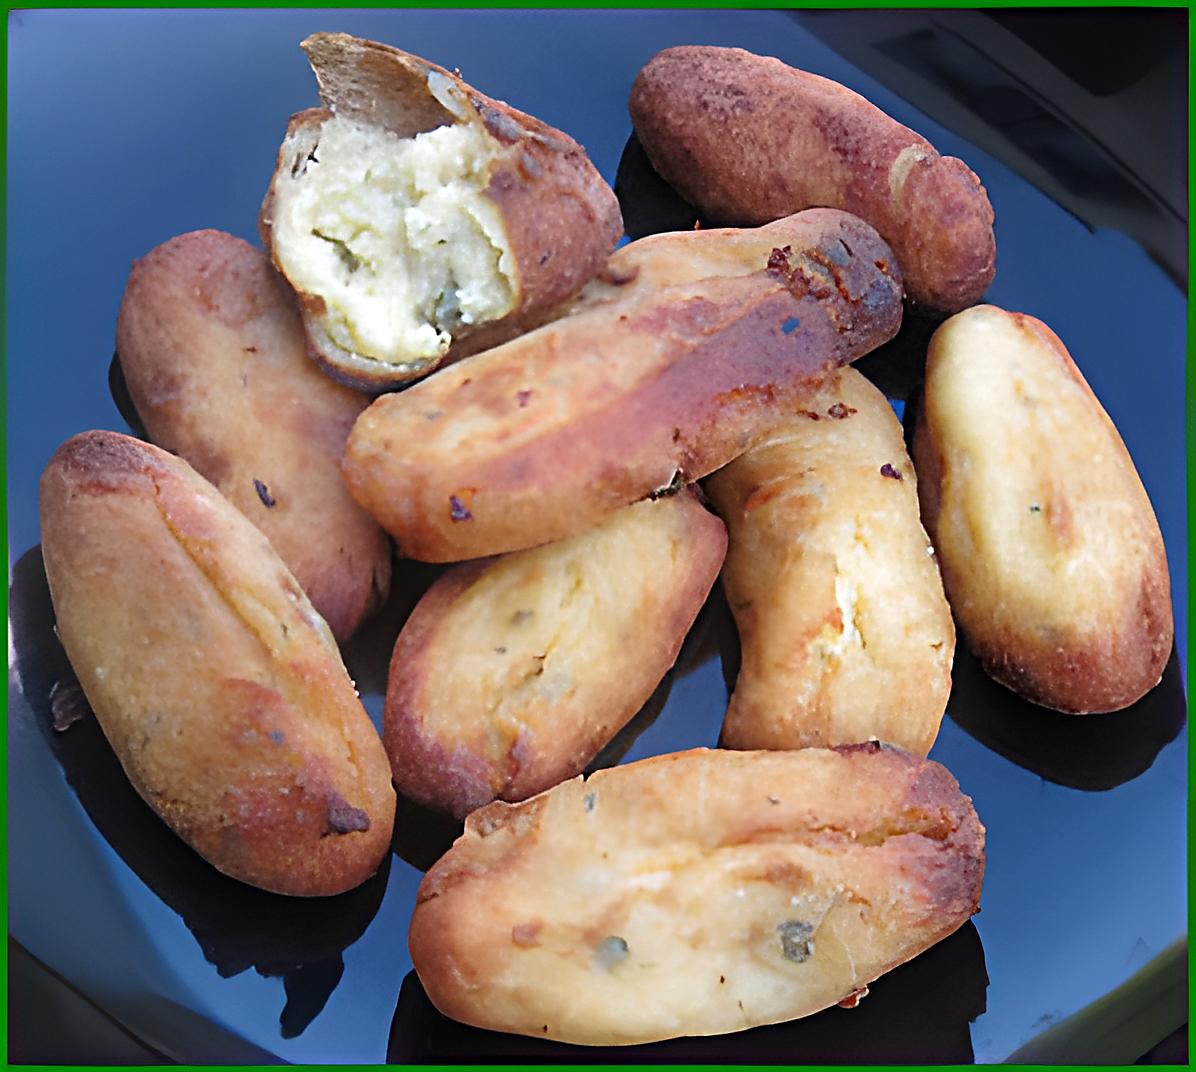 recette Croquettes de pommes de terre à l'Italienne